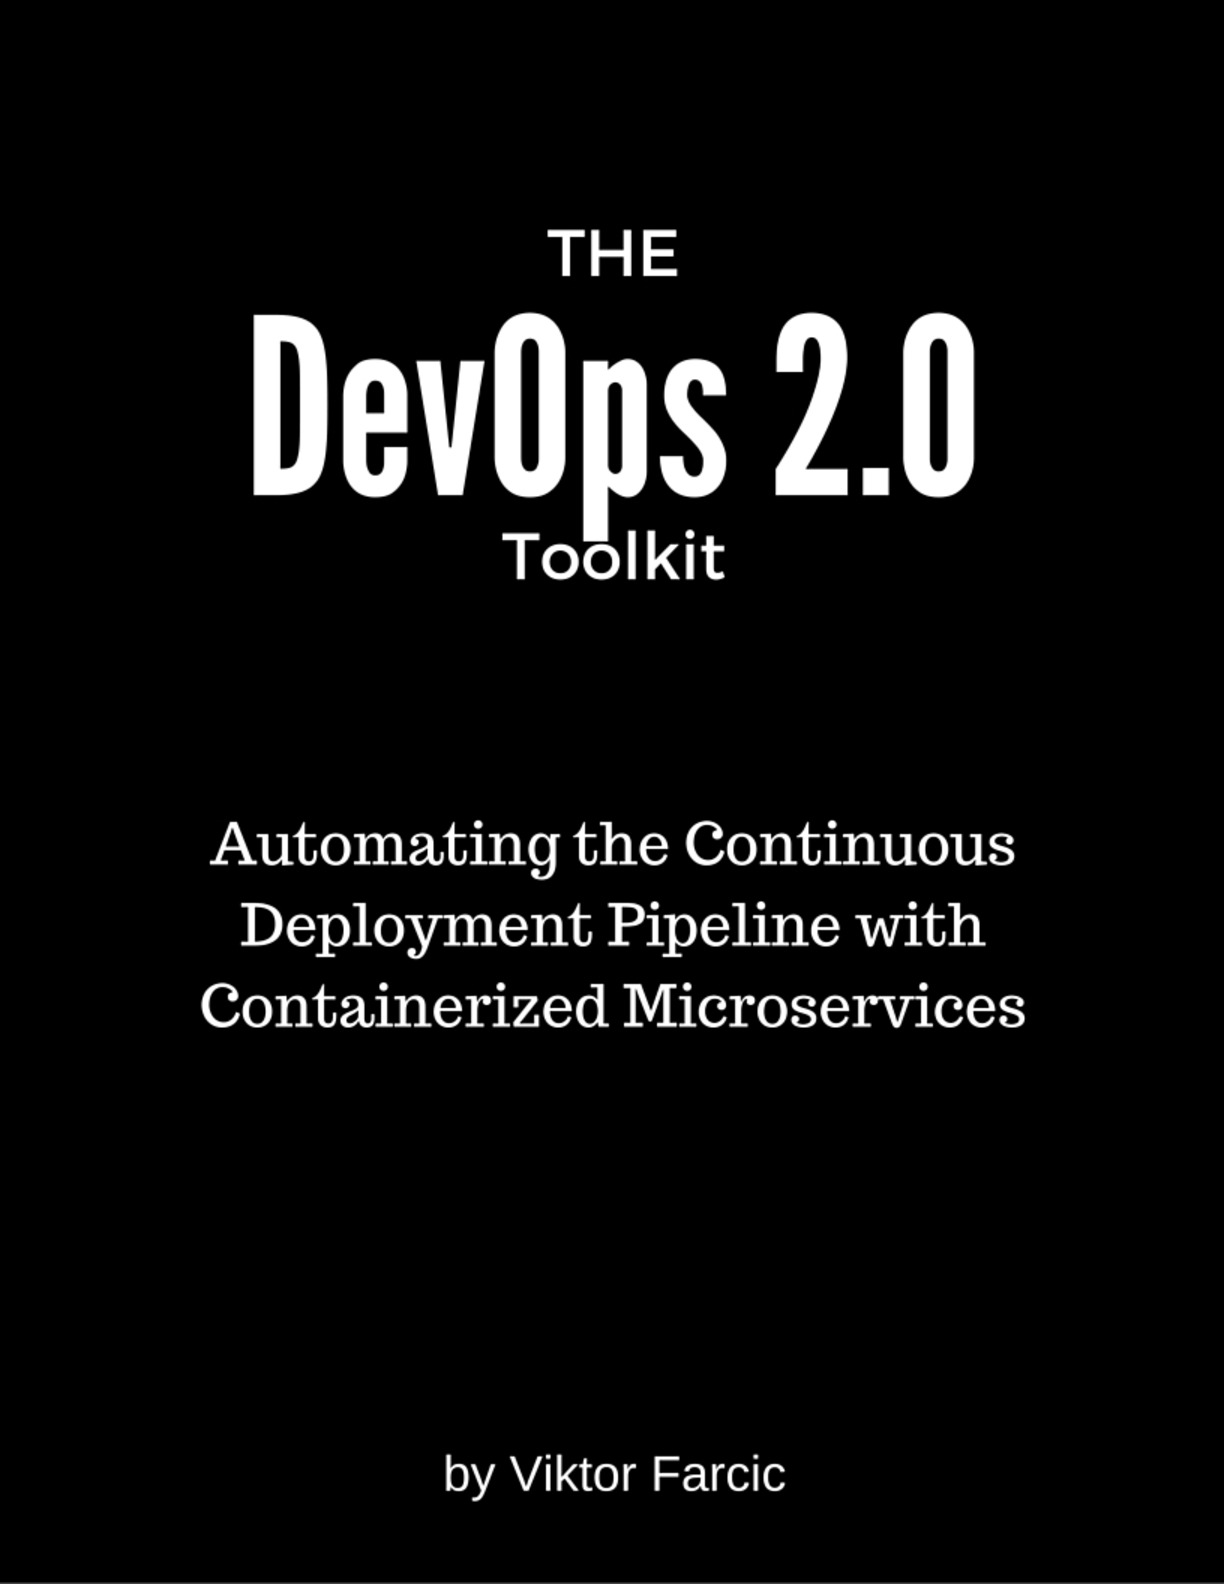 devops-2-0-toolkit